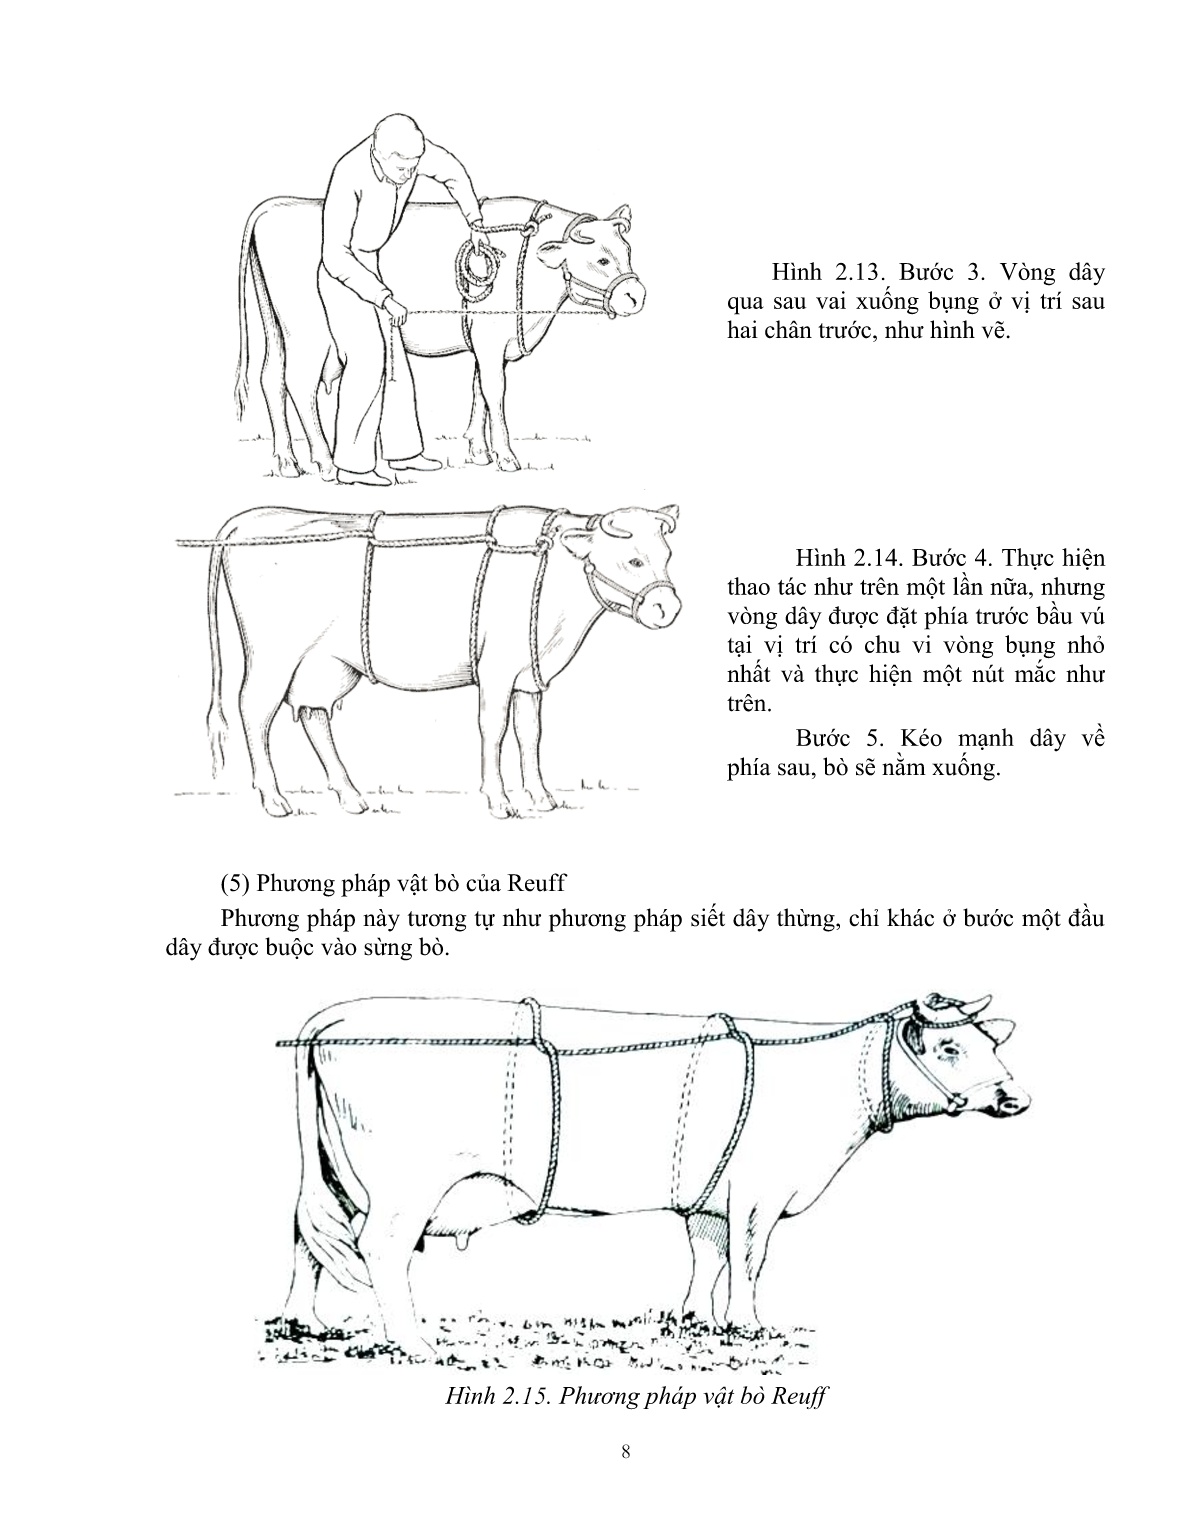 Giáo trình Kỹ thuật thực hành chăn nuôi – thú y áp dụng cho trâu, bò (Trình độ: Đào tạo dưới 3 tháng) trang 9